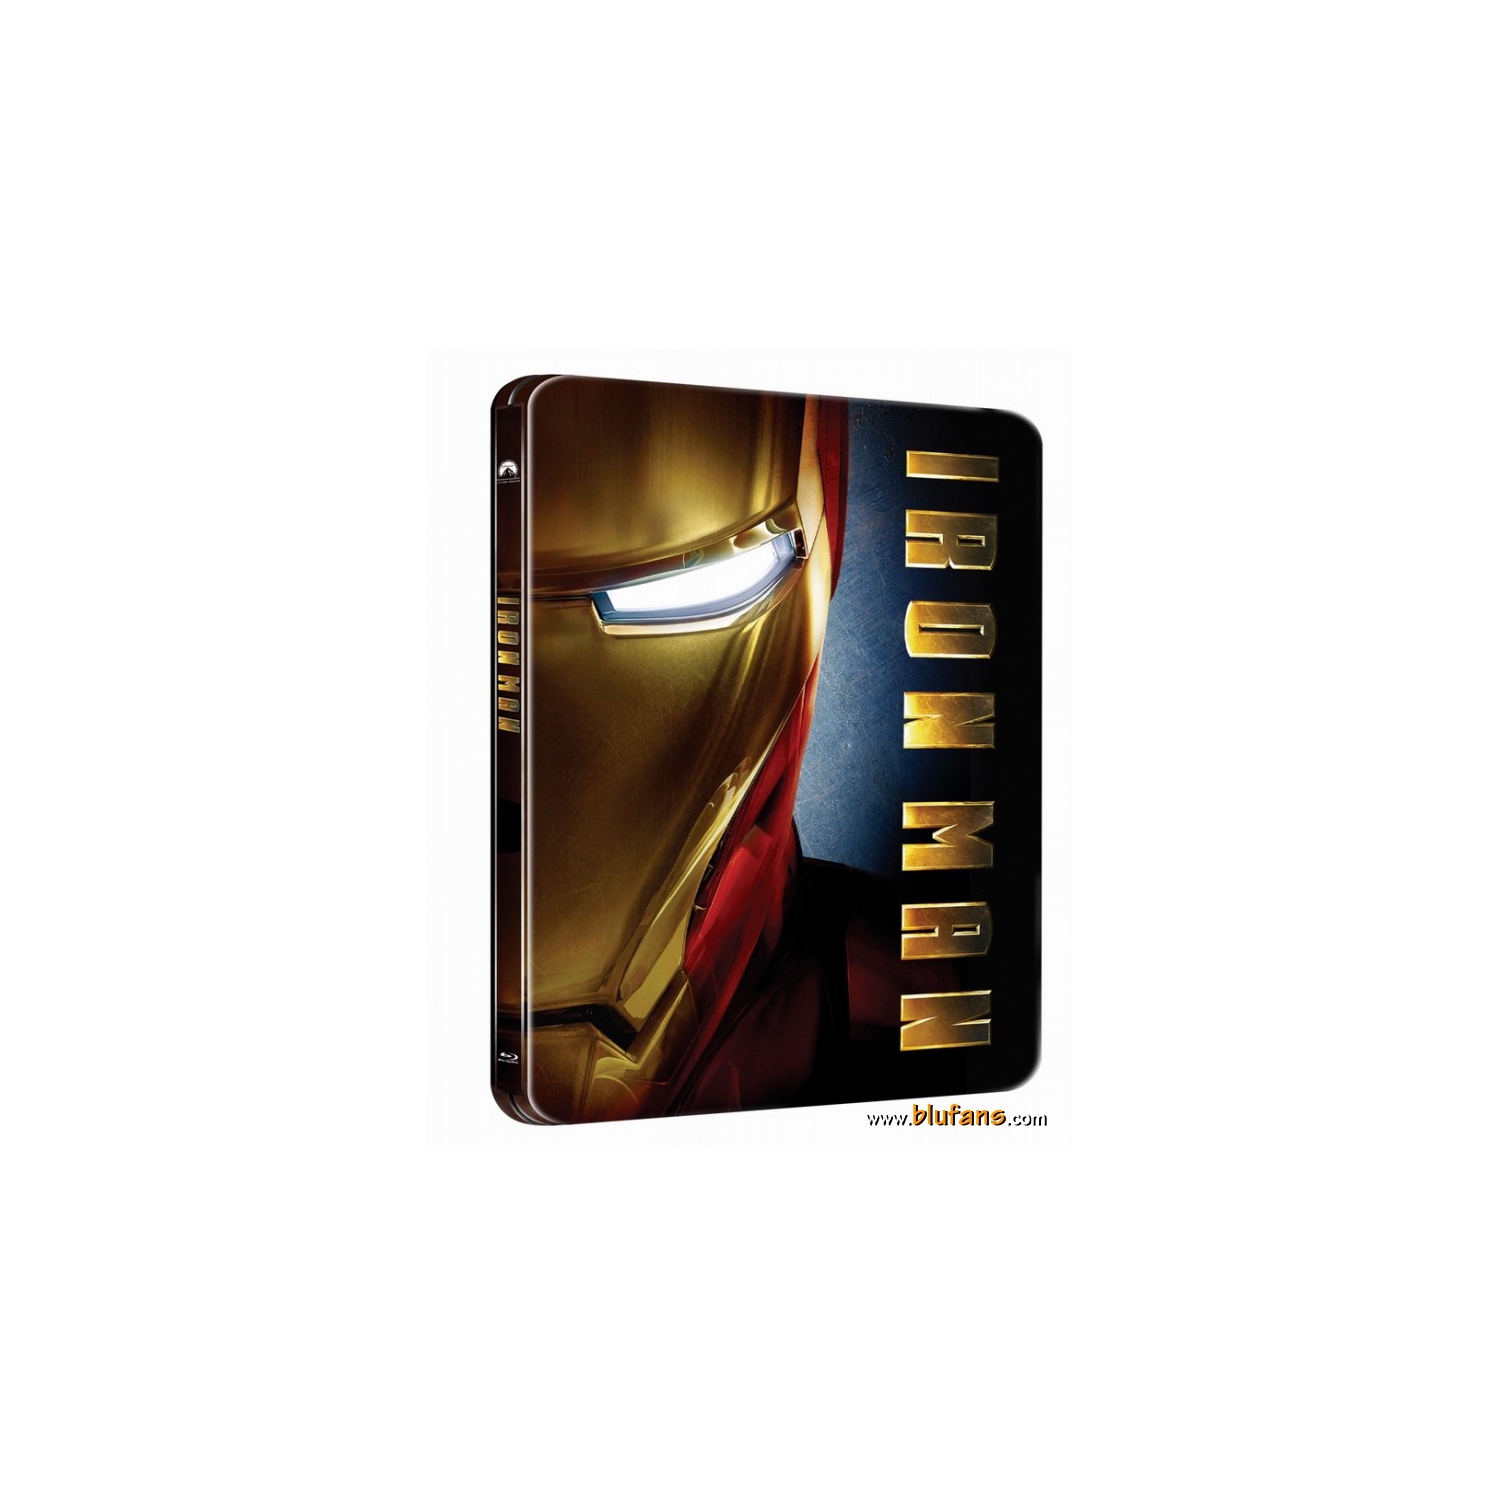 Blufans Iron Man SteelBook Empty Storage Case for DVD or Blu-ray Discs